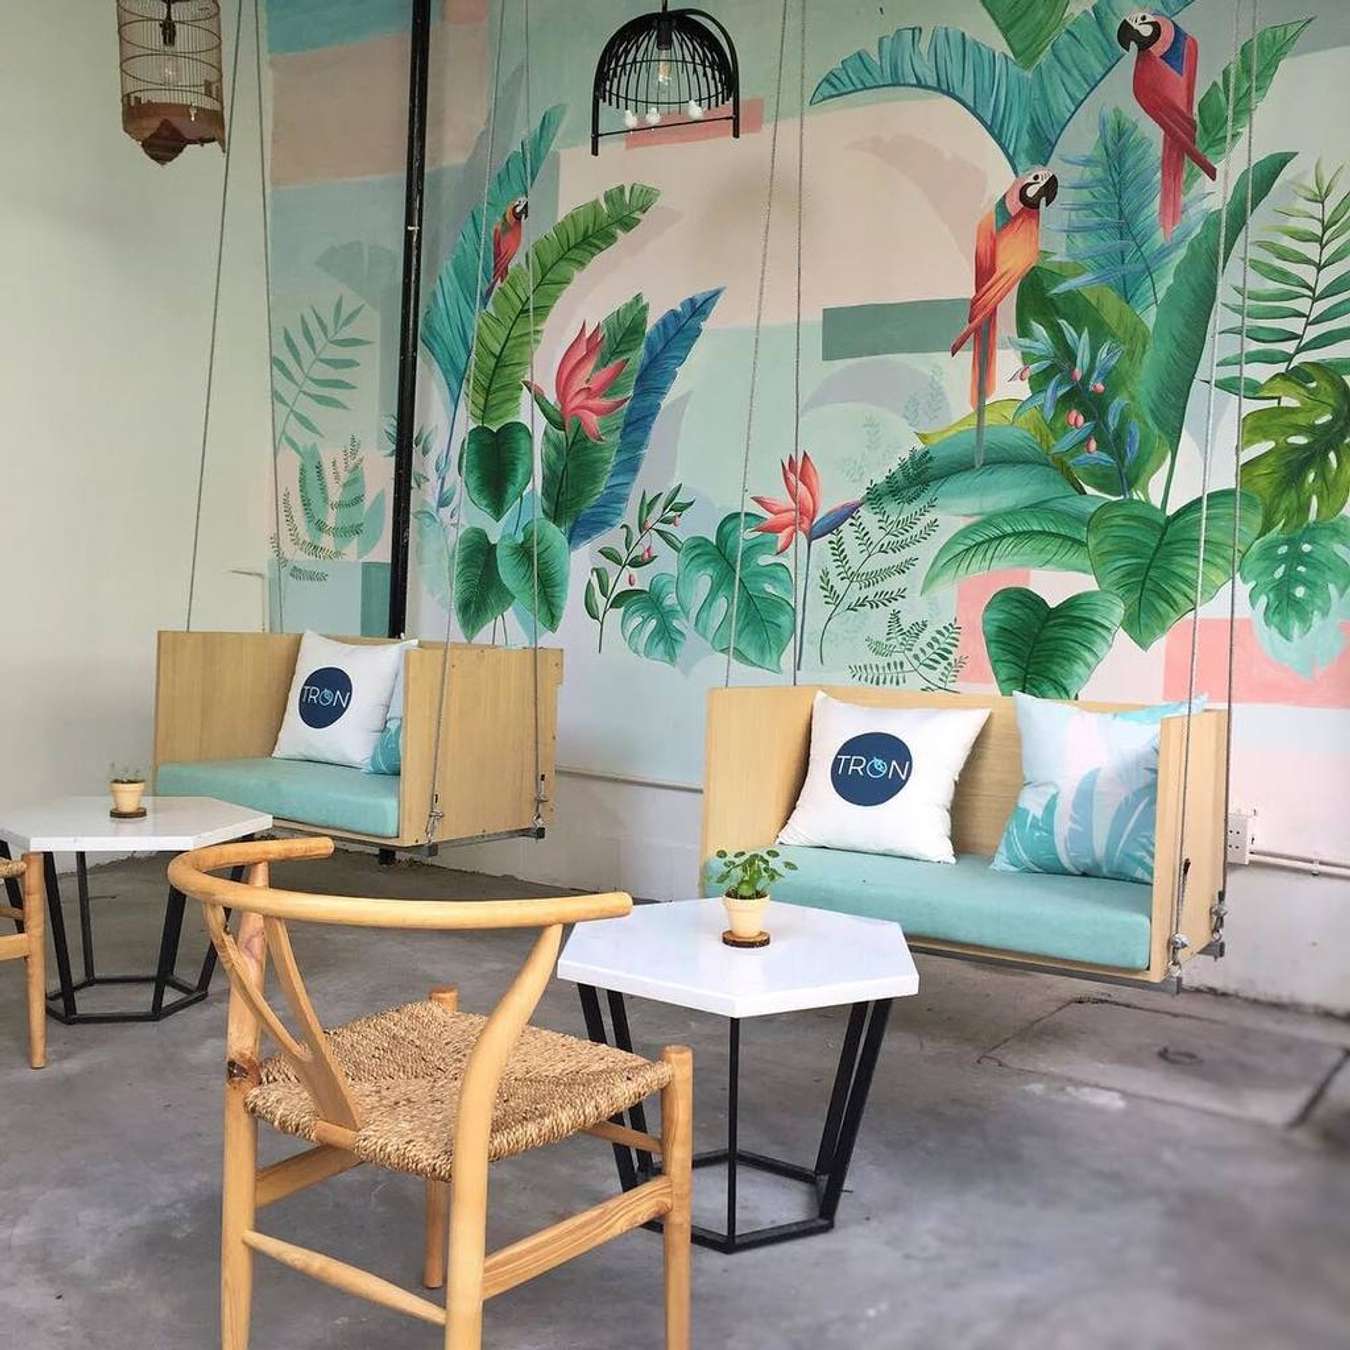 10 Quán Cafe Đẹp Ở Sài Gòn Dành Cho Các Tín Đồ Sống Ảo